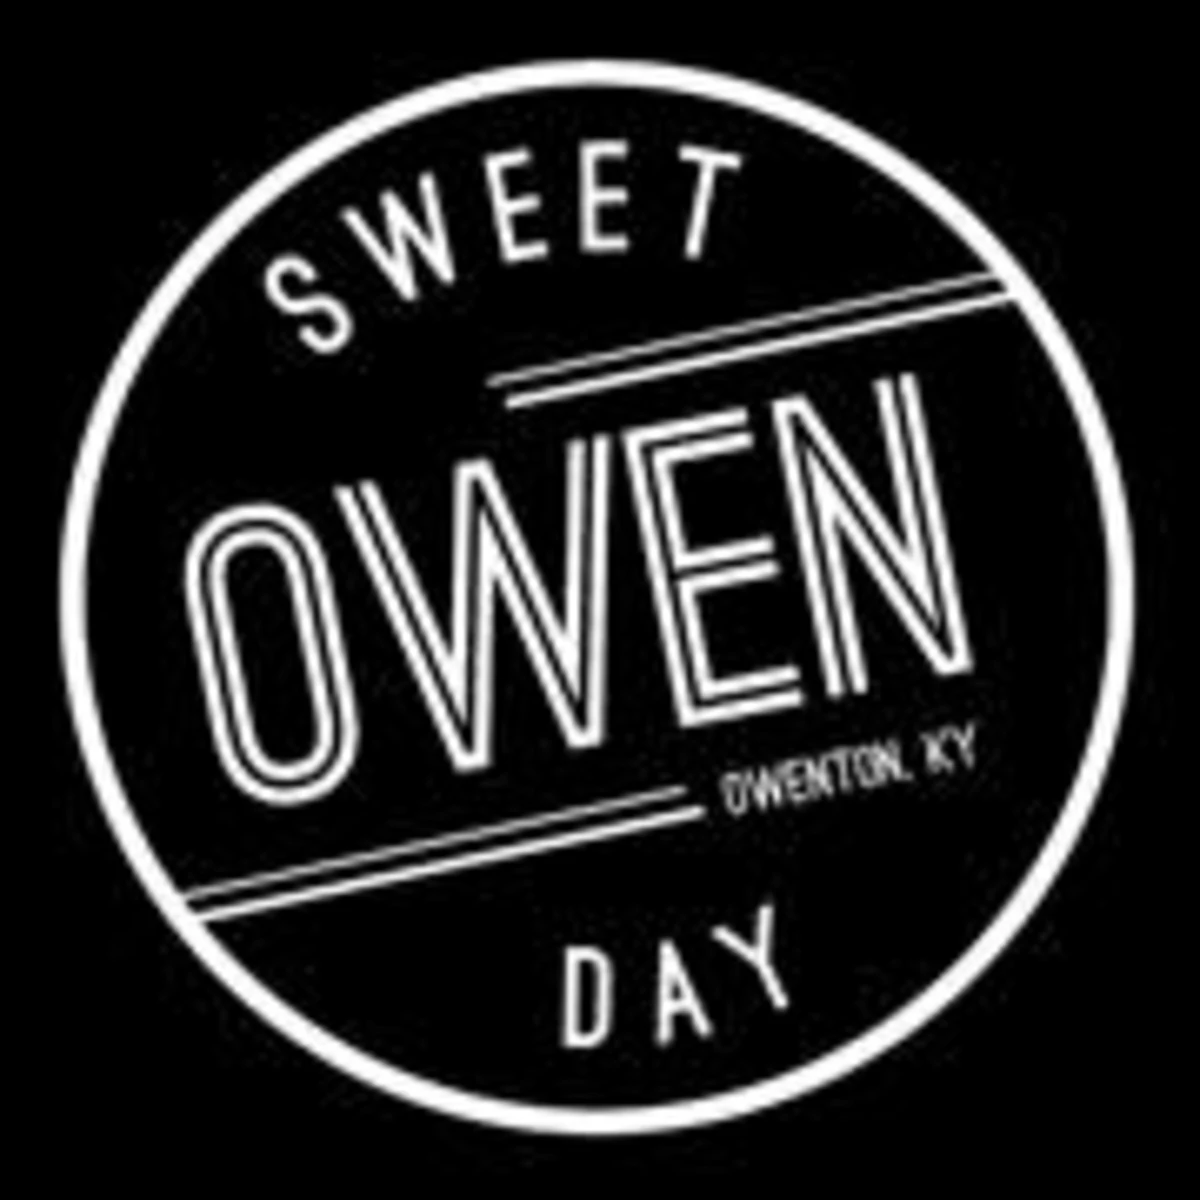 Sweet Owen Day Fall Festival